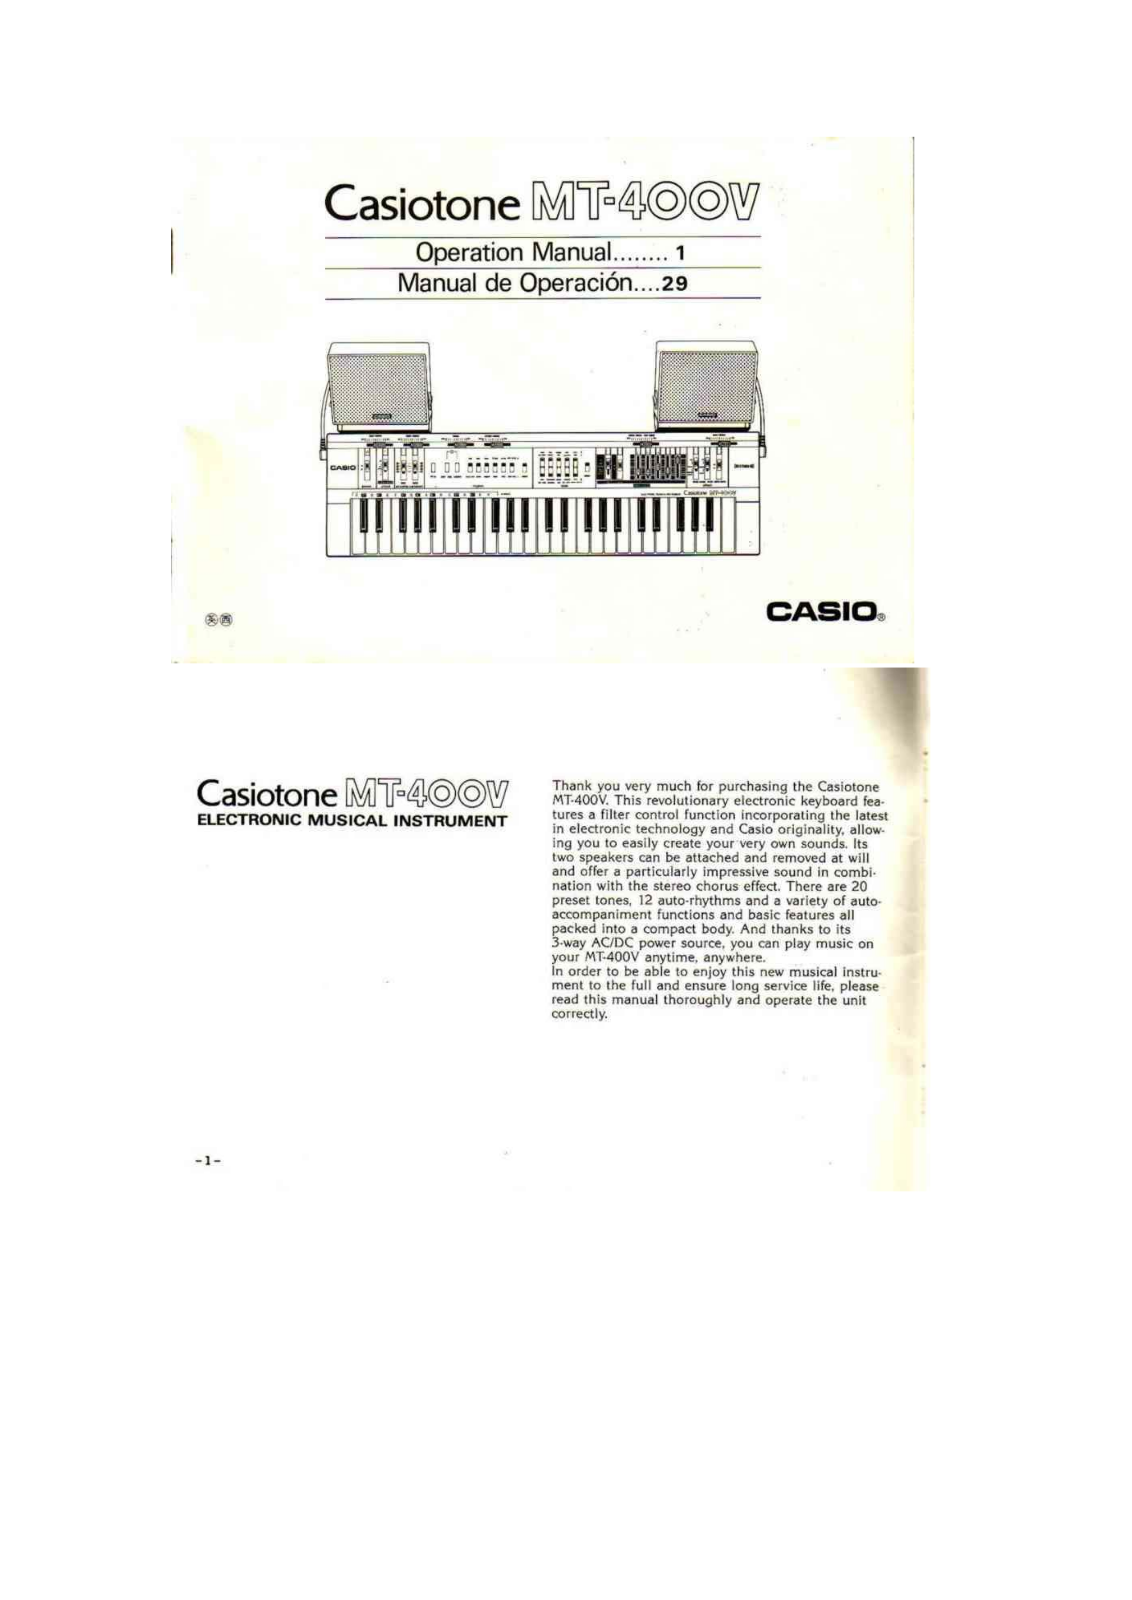 Casio MT-400V User Manual